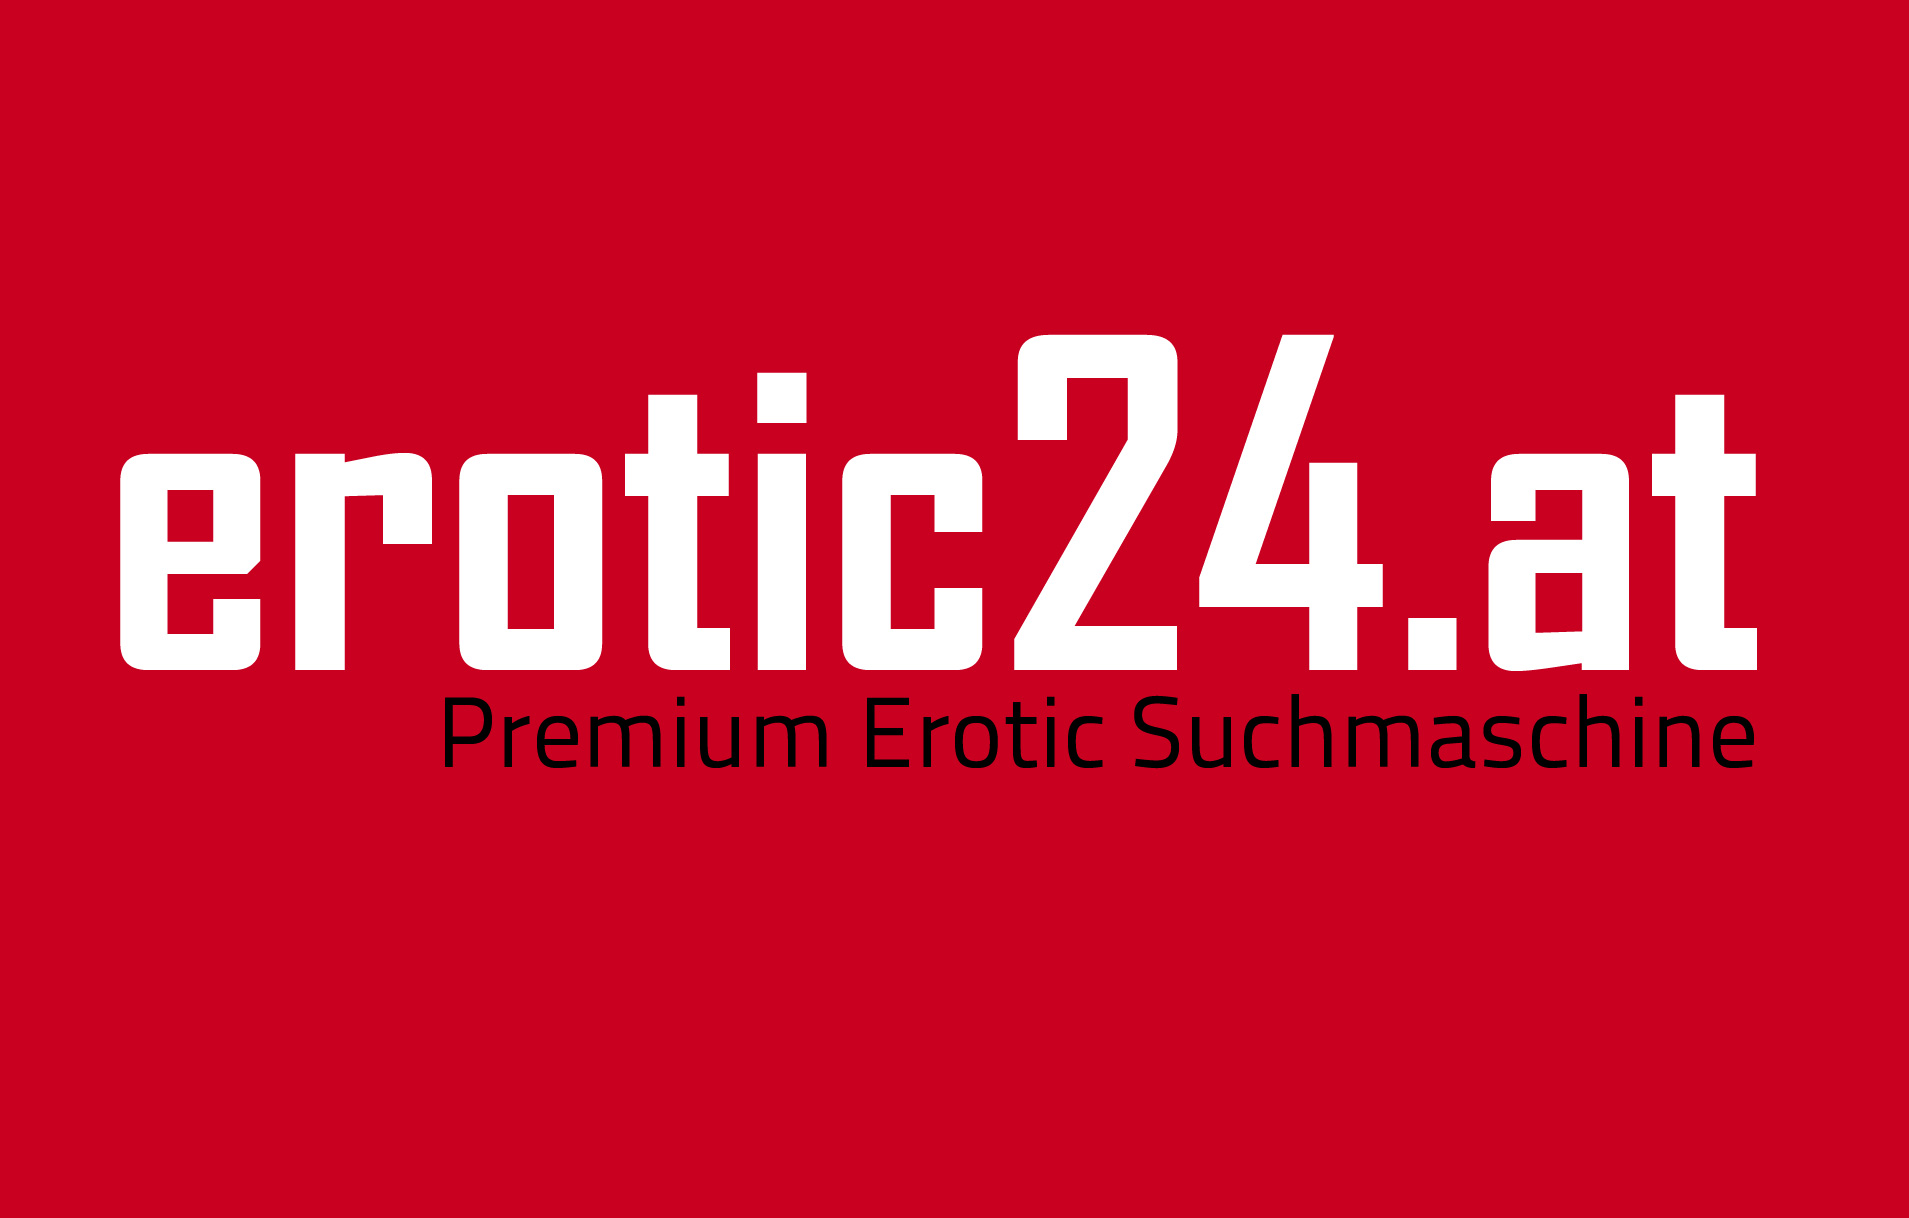 www.erotic24.at